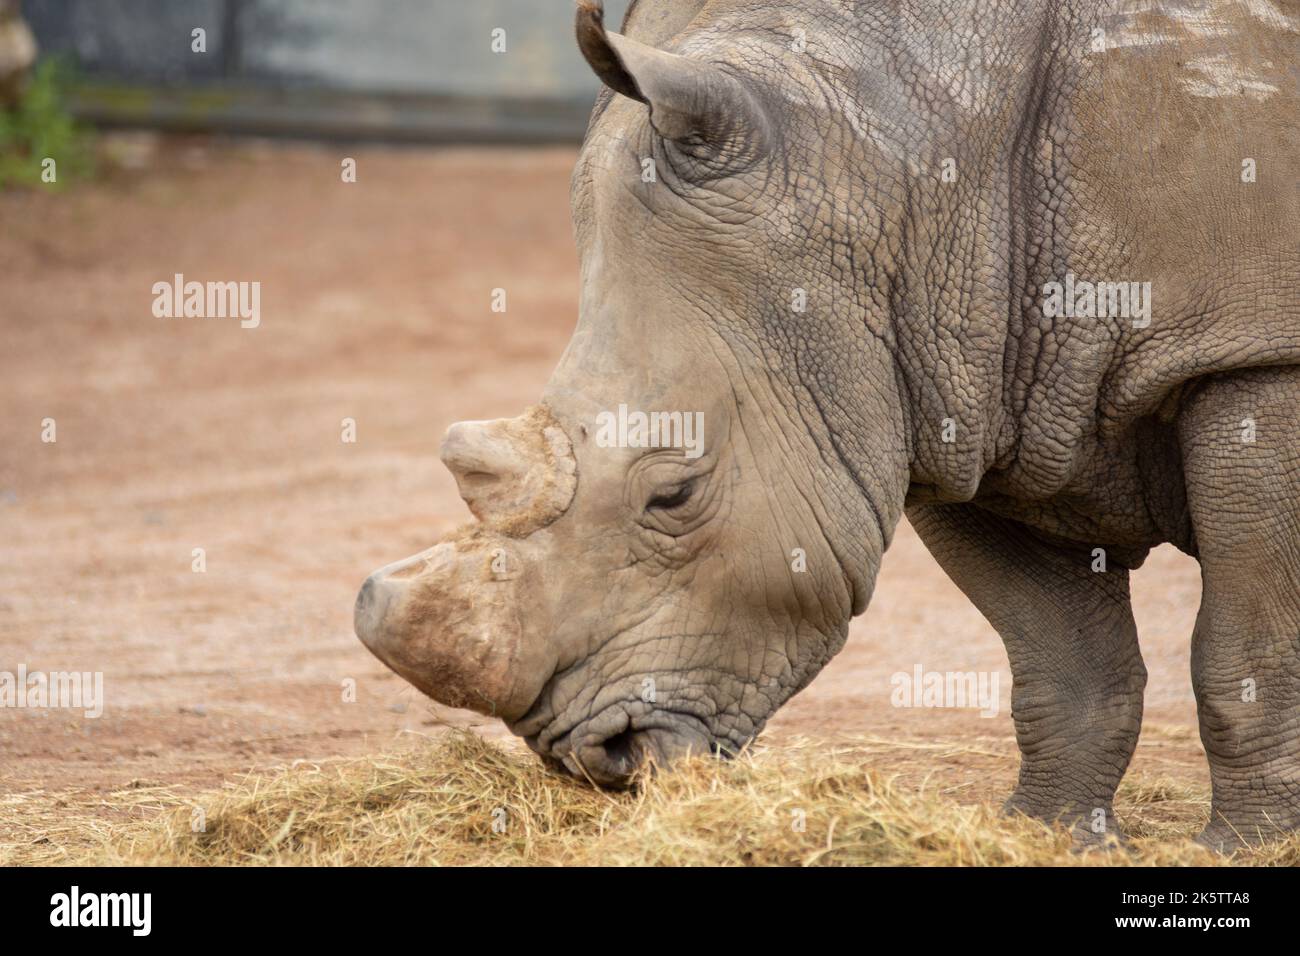 rinoceronte comiendo pasto en una reserva animal Foto de stock